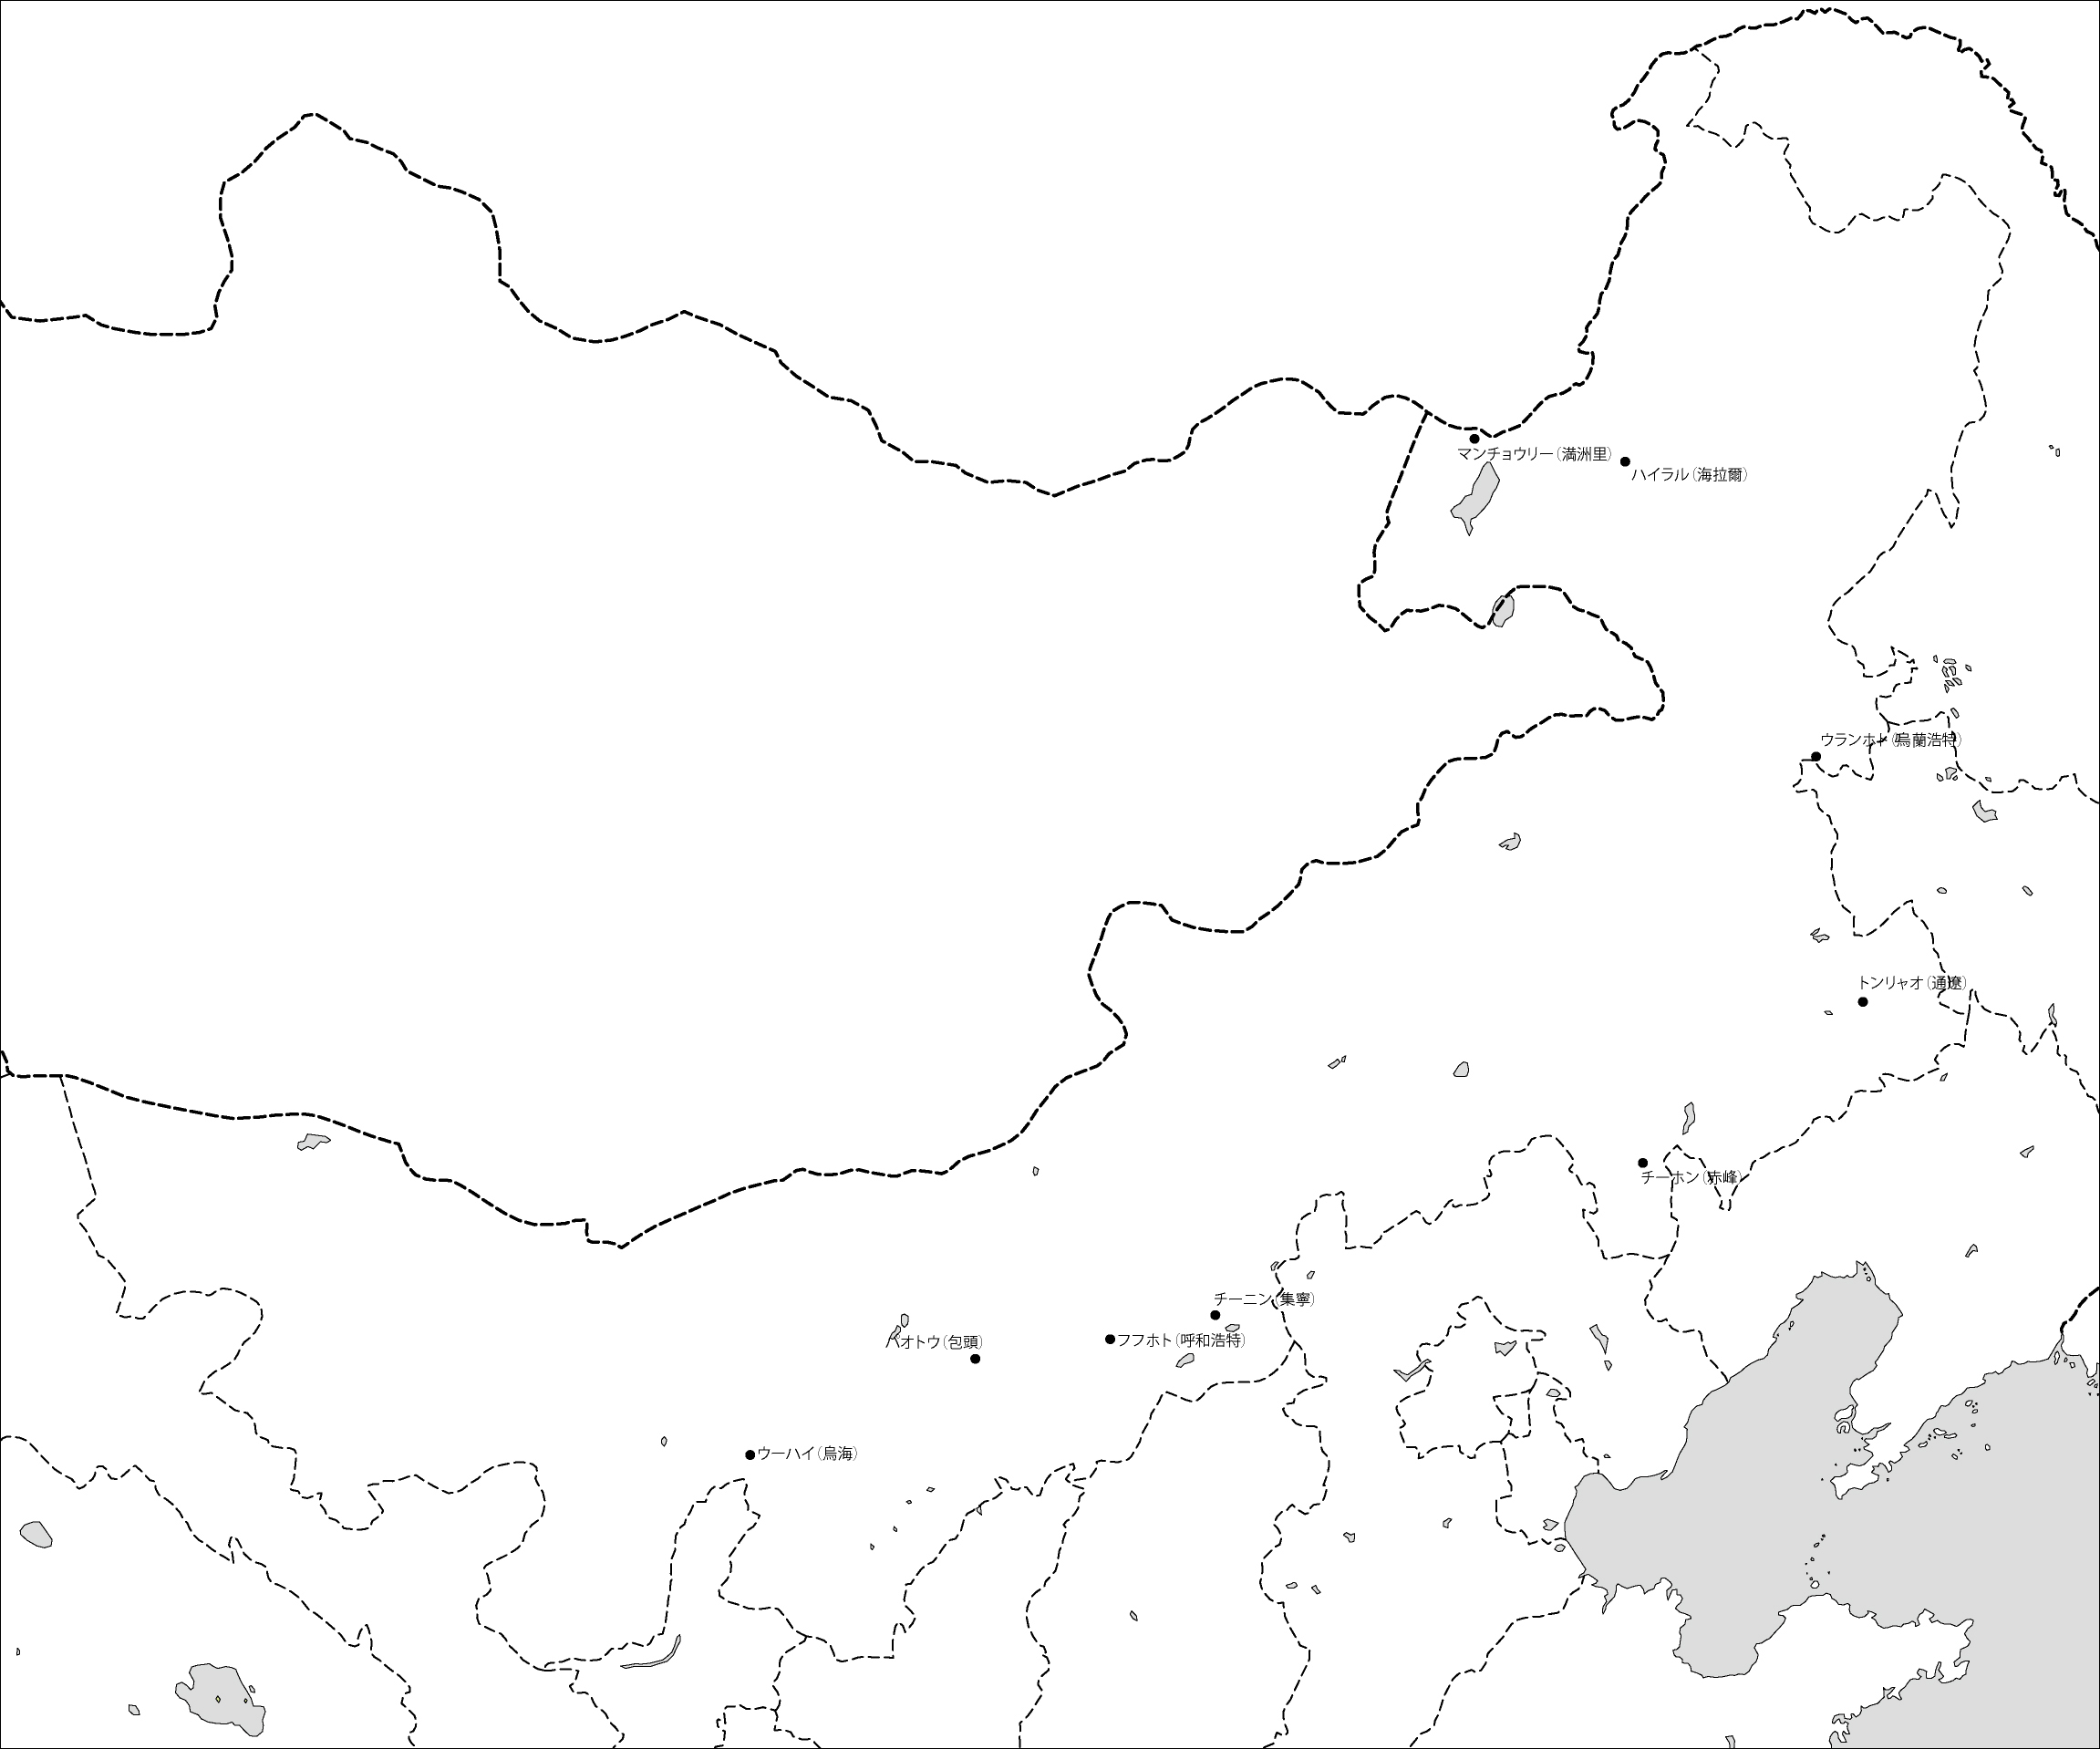 内モンゴル自治区白地図(主な都市あり)のフリーデータの画像